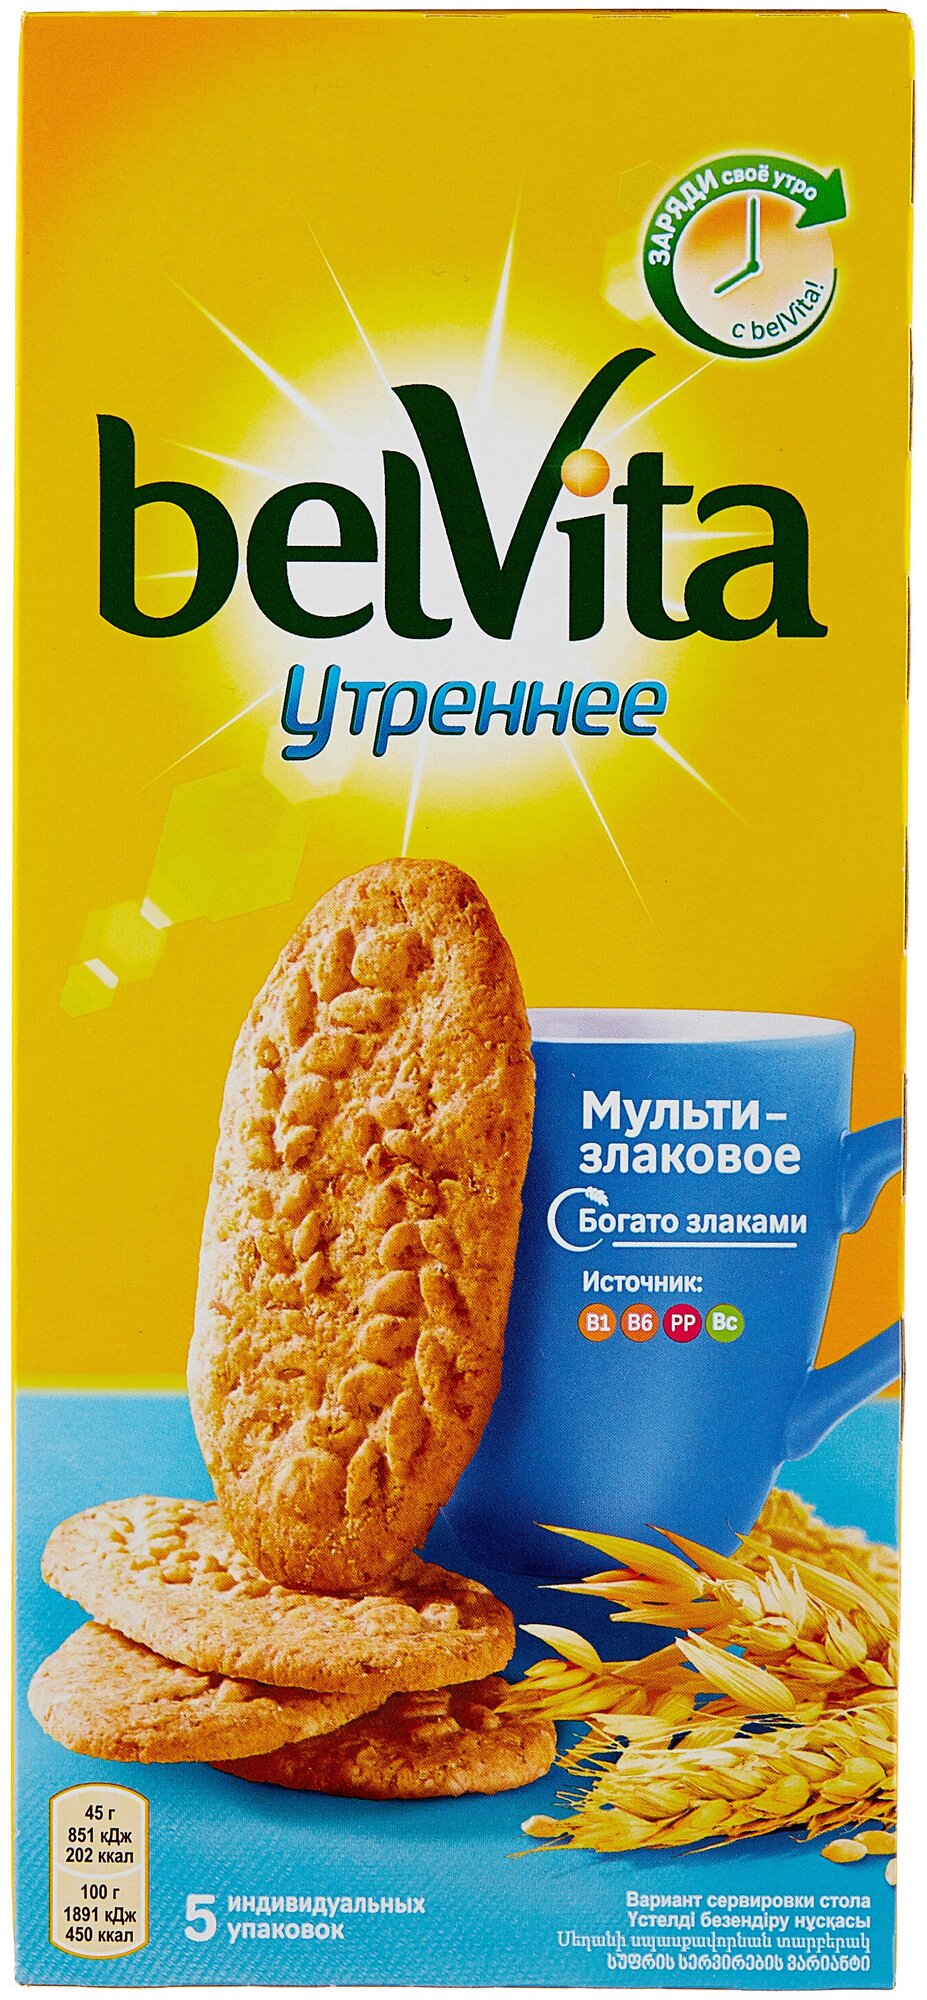 BelVita утреннее Печенье мультизлаковое витаминизированное со злаковыми хлопьями, 5 индивидуальных упаковок, 225Г - фотография № 8